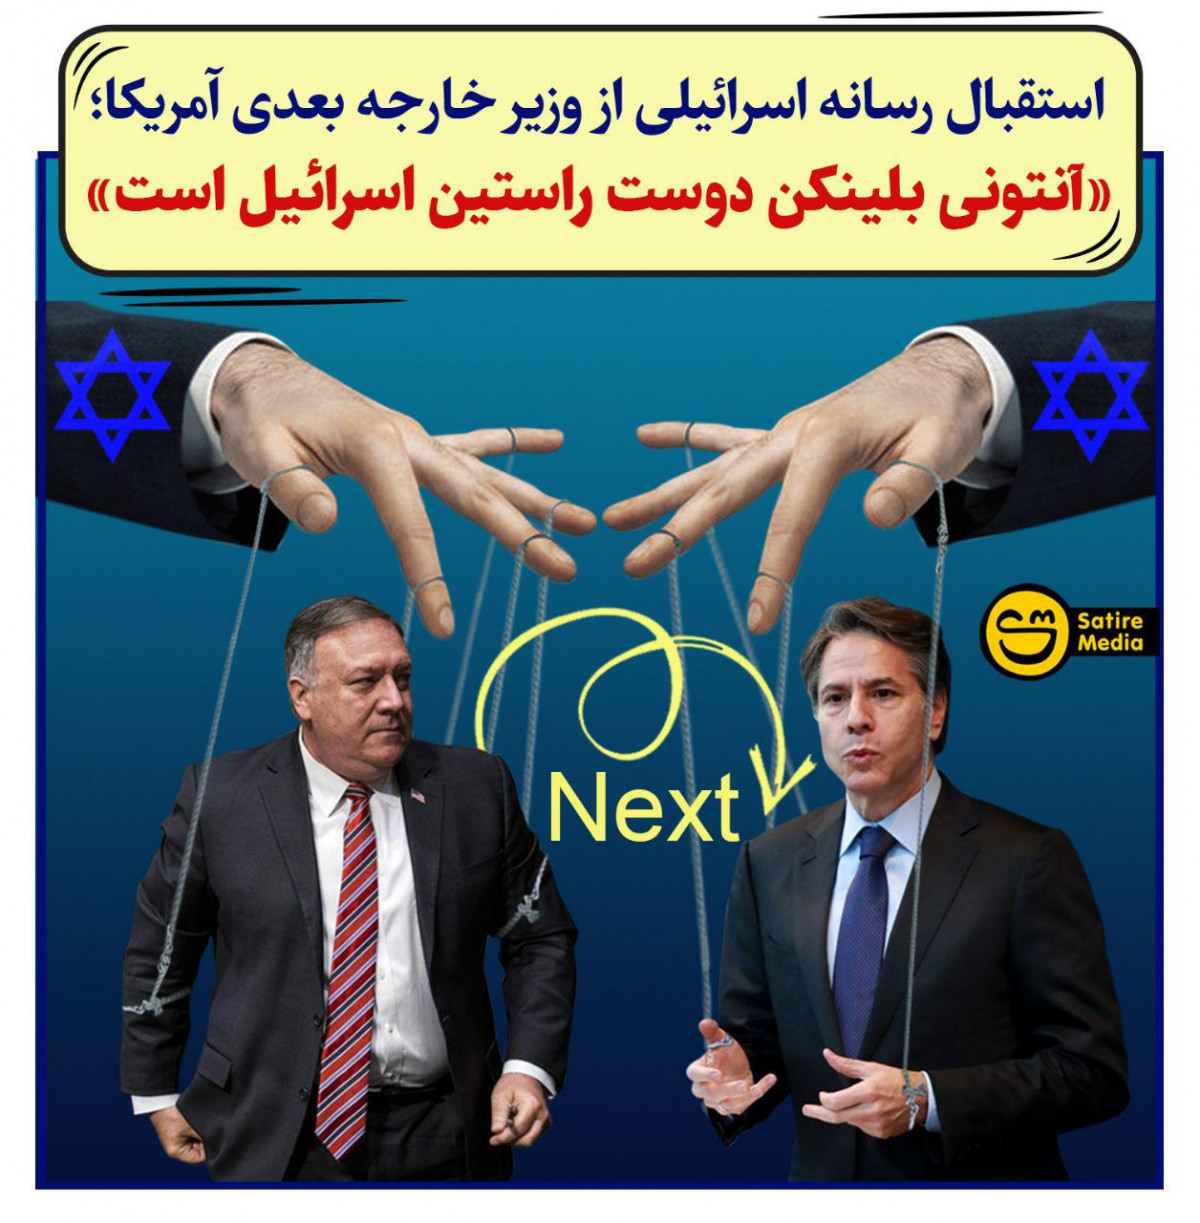 پوستر: استقبال رسانه اسرائیلی از وزیر خارجه بعدی آمریکا؛